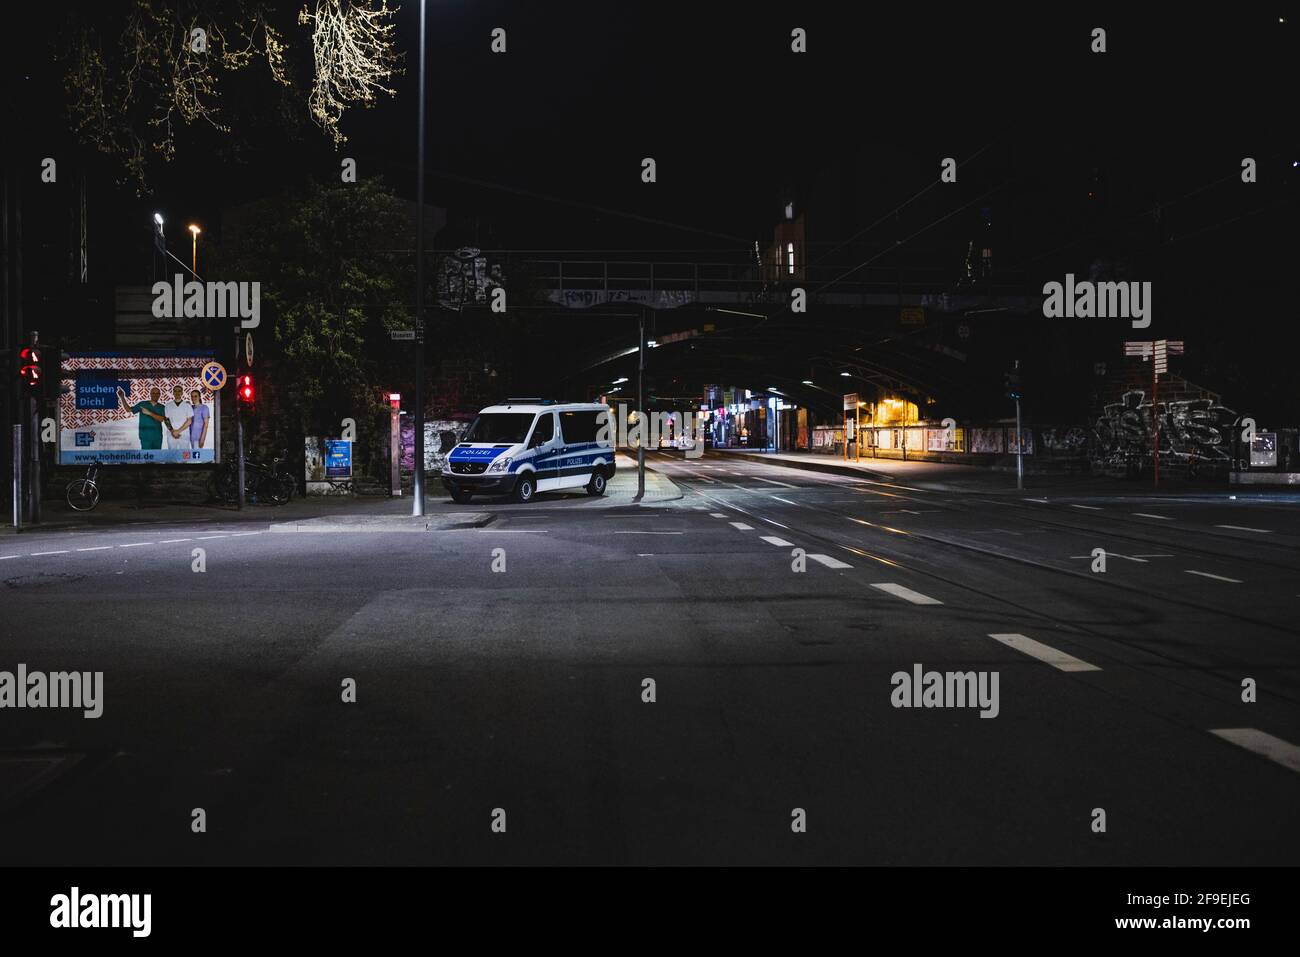 Kšln, Innenstadt, 17.04.21-18.04.21: Bildddokumentation der Ausgsperre von 21Uhr bis 5Uhr, Viele Polizeiwagen stehem und kontrolieren. Foto Stock